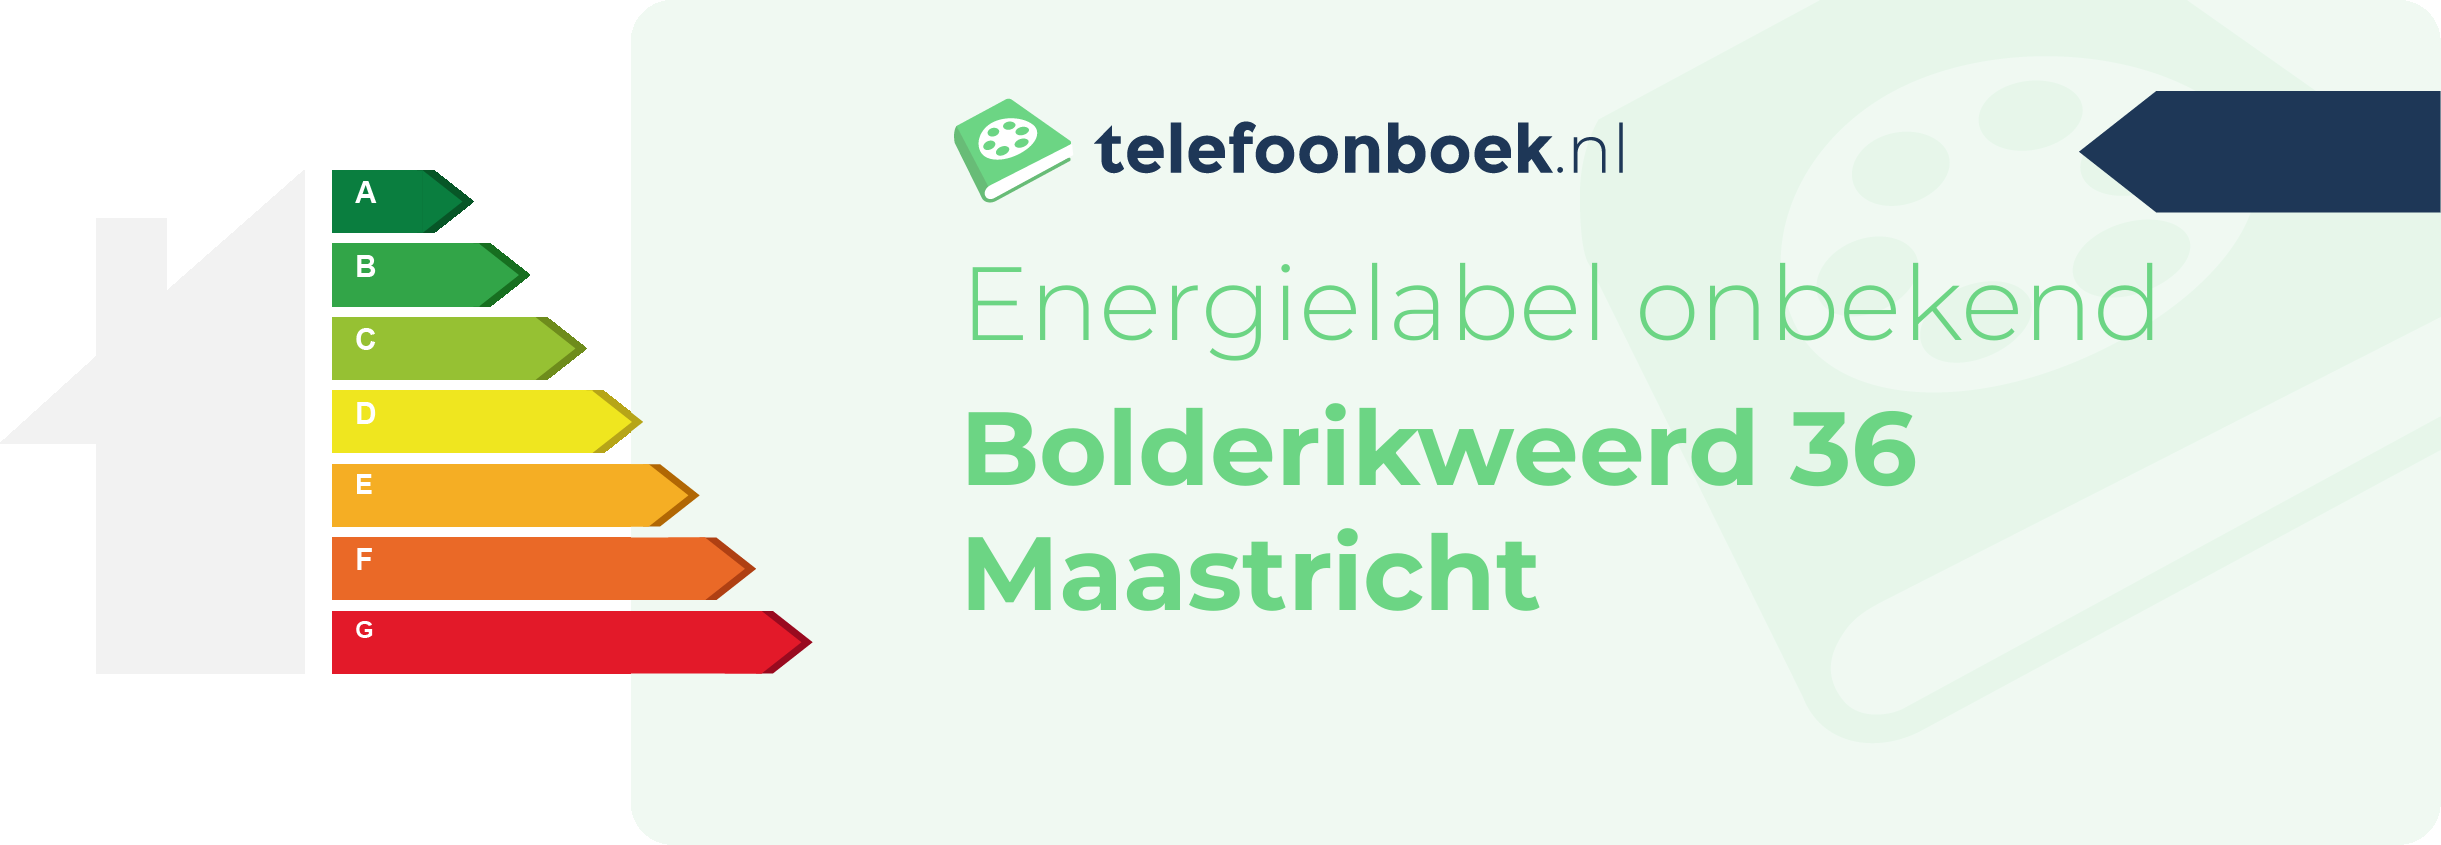 Energielabel Bolderikweerd 36 Maastricht